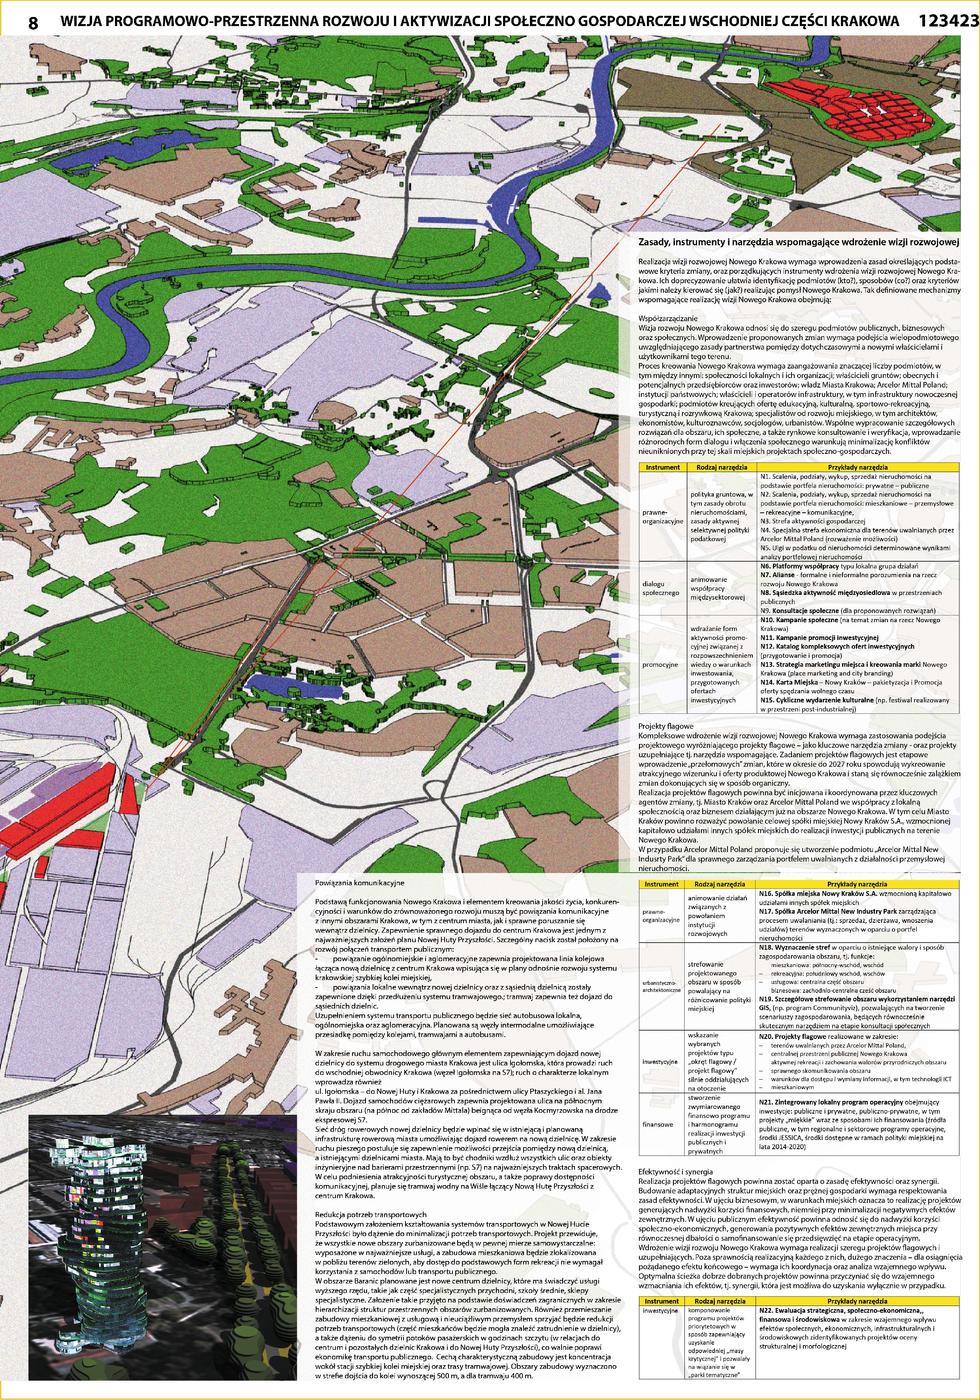 Biuro projektów urbanistyki i architekturay ARCA - koncepcja rozwoju Krakowa